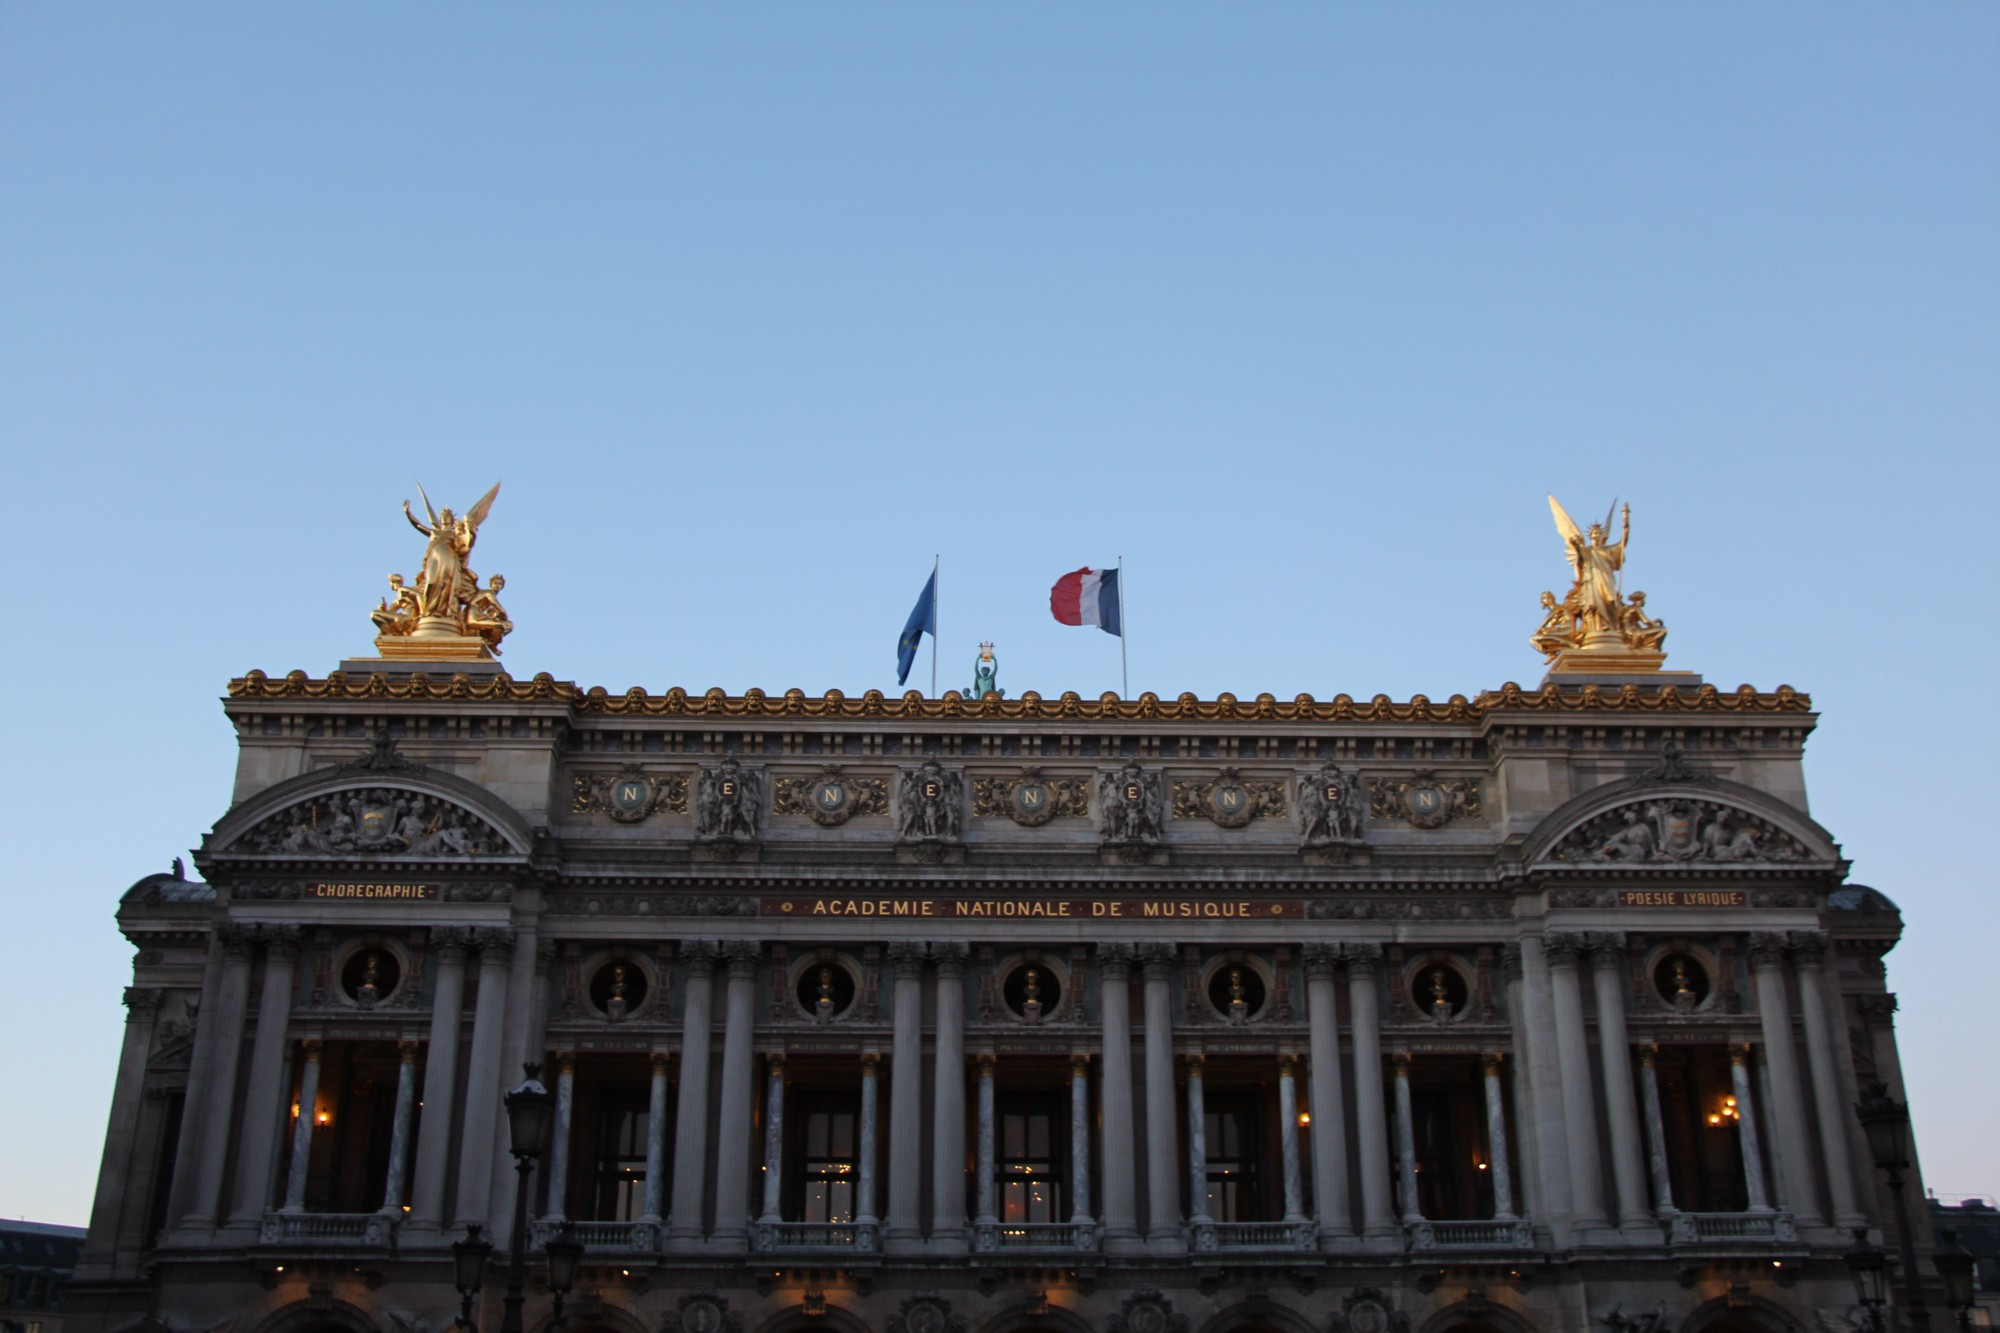 Opera Garnier, France